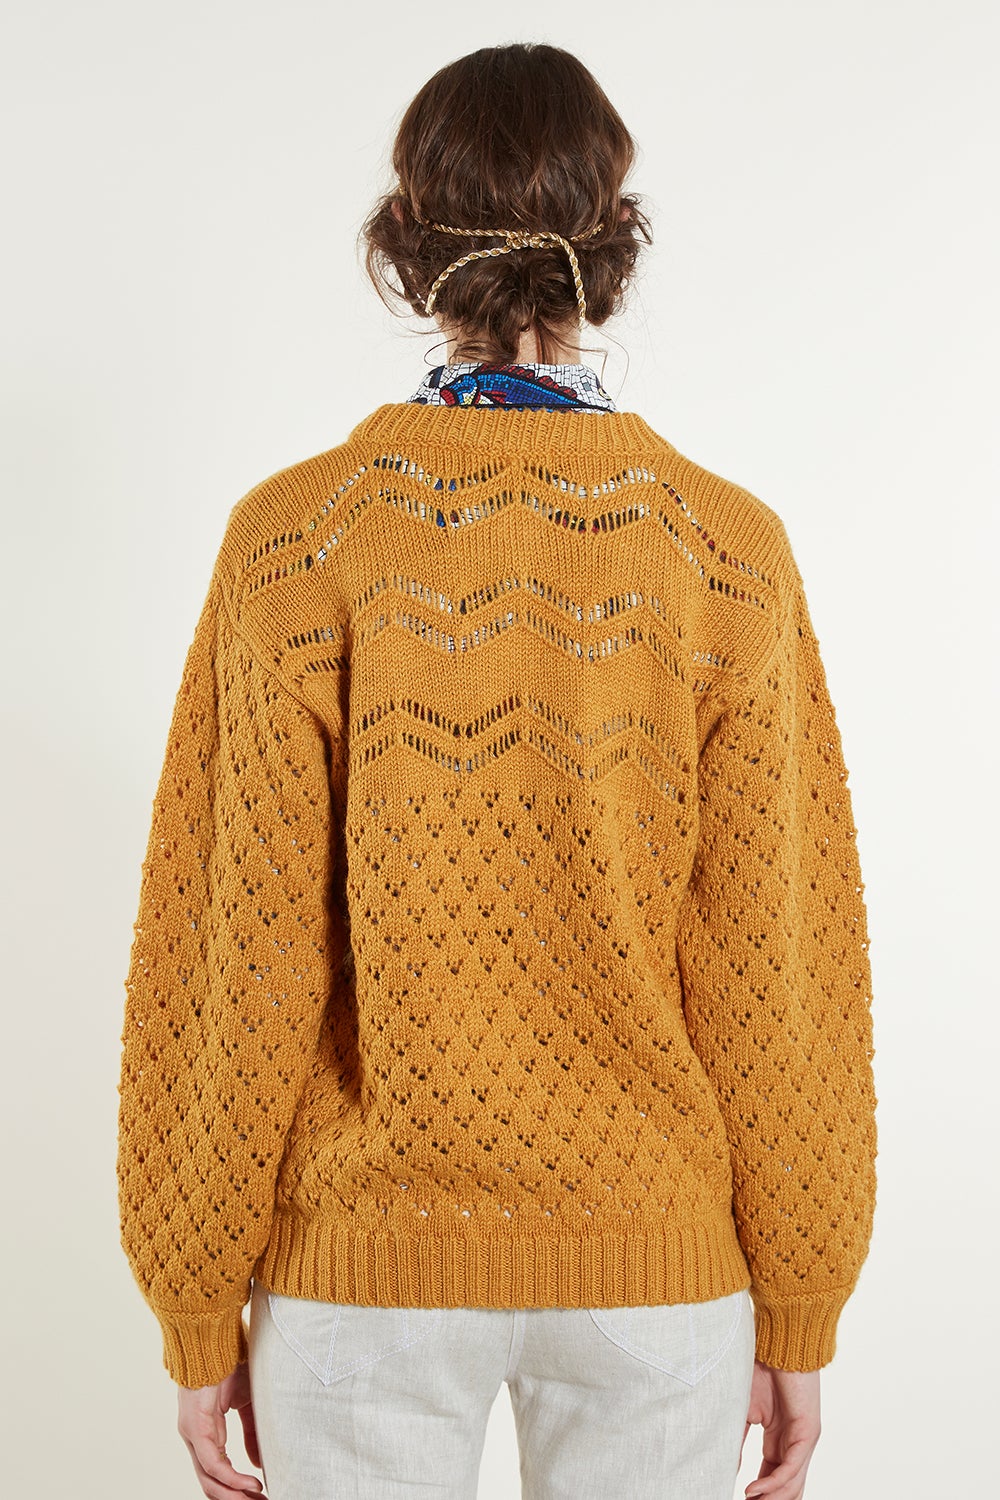 Artemis Sweater